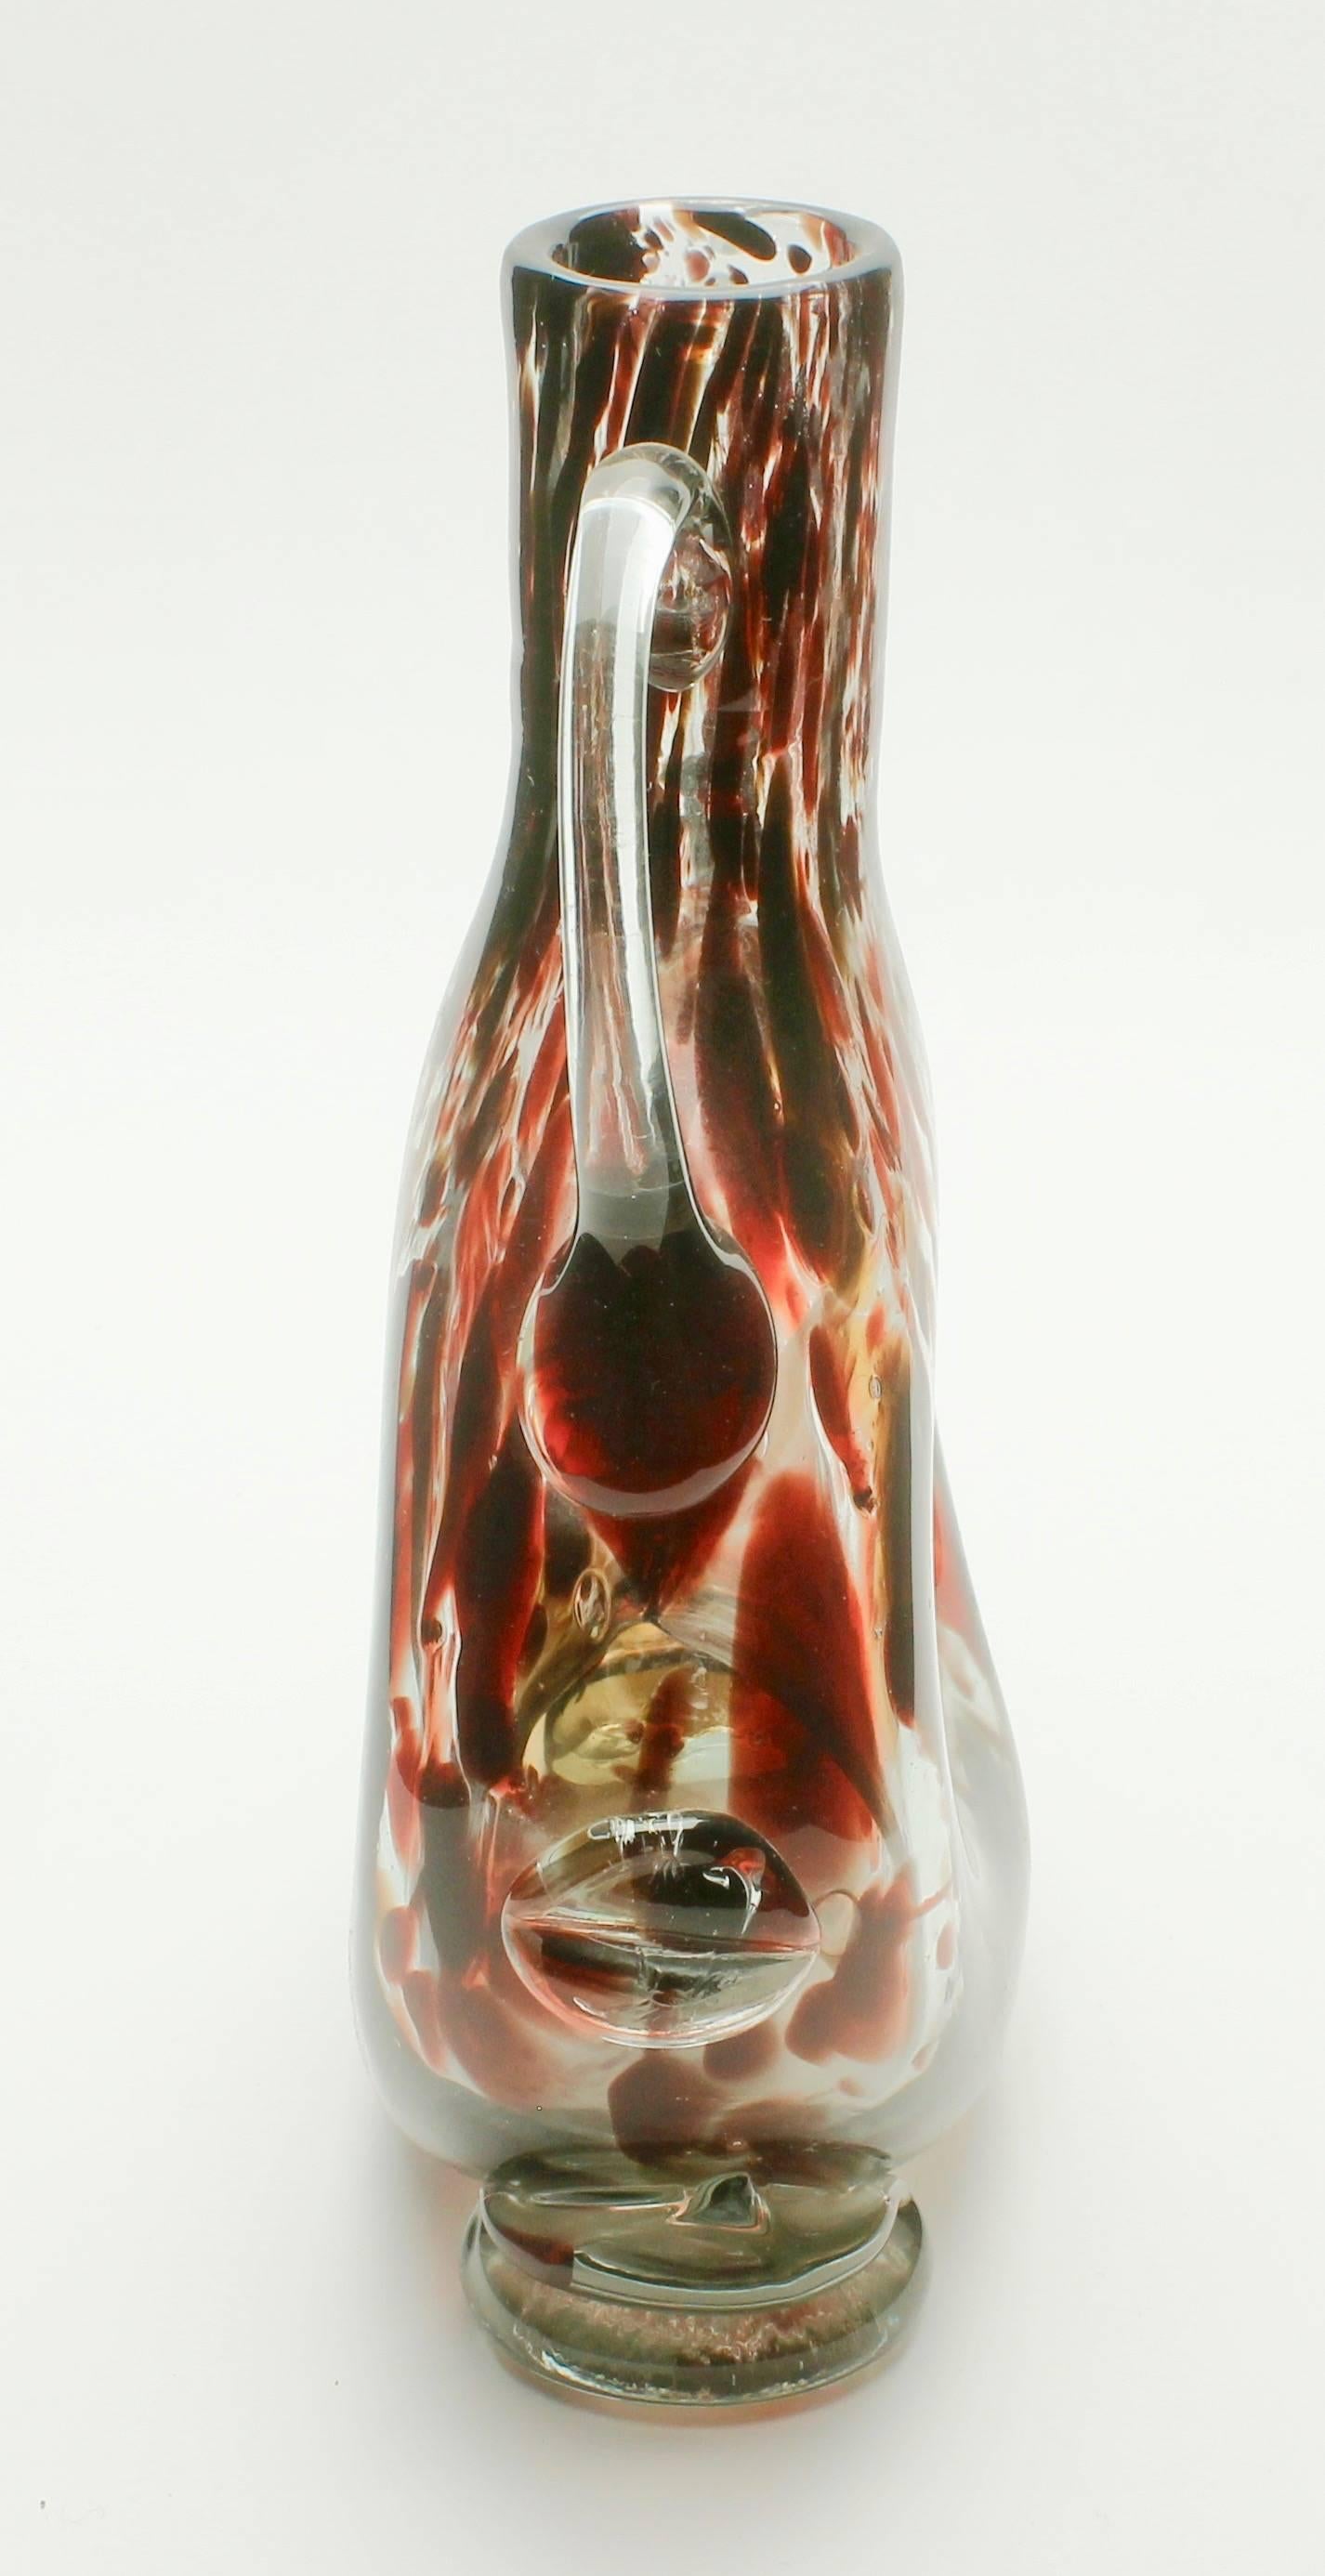 Italian Studio Glass Vase Based on a Mouth-Blown Bottle Shape of Tortoiseshell For Sale